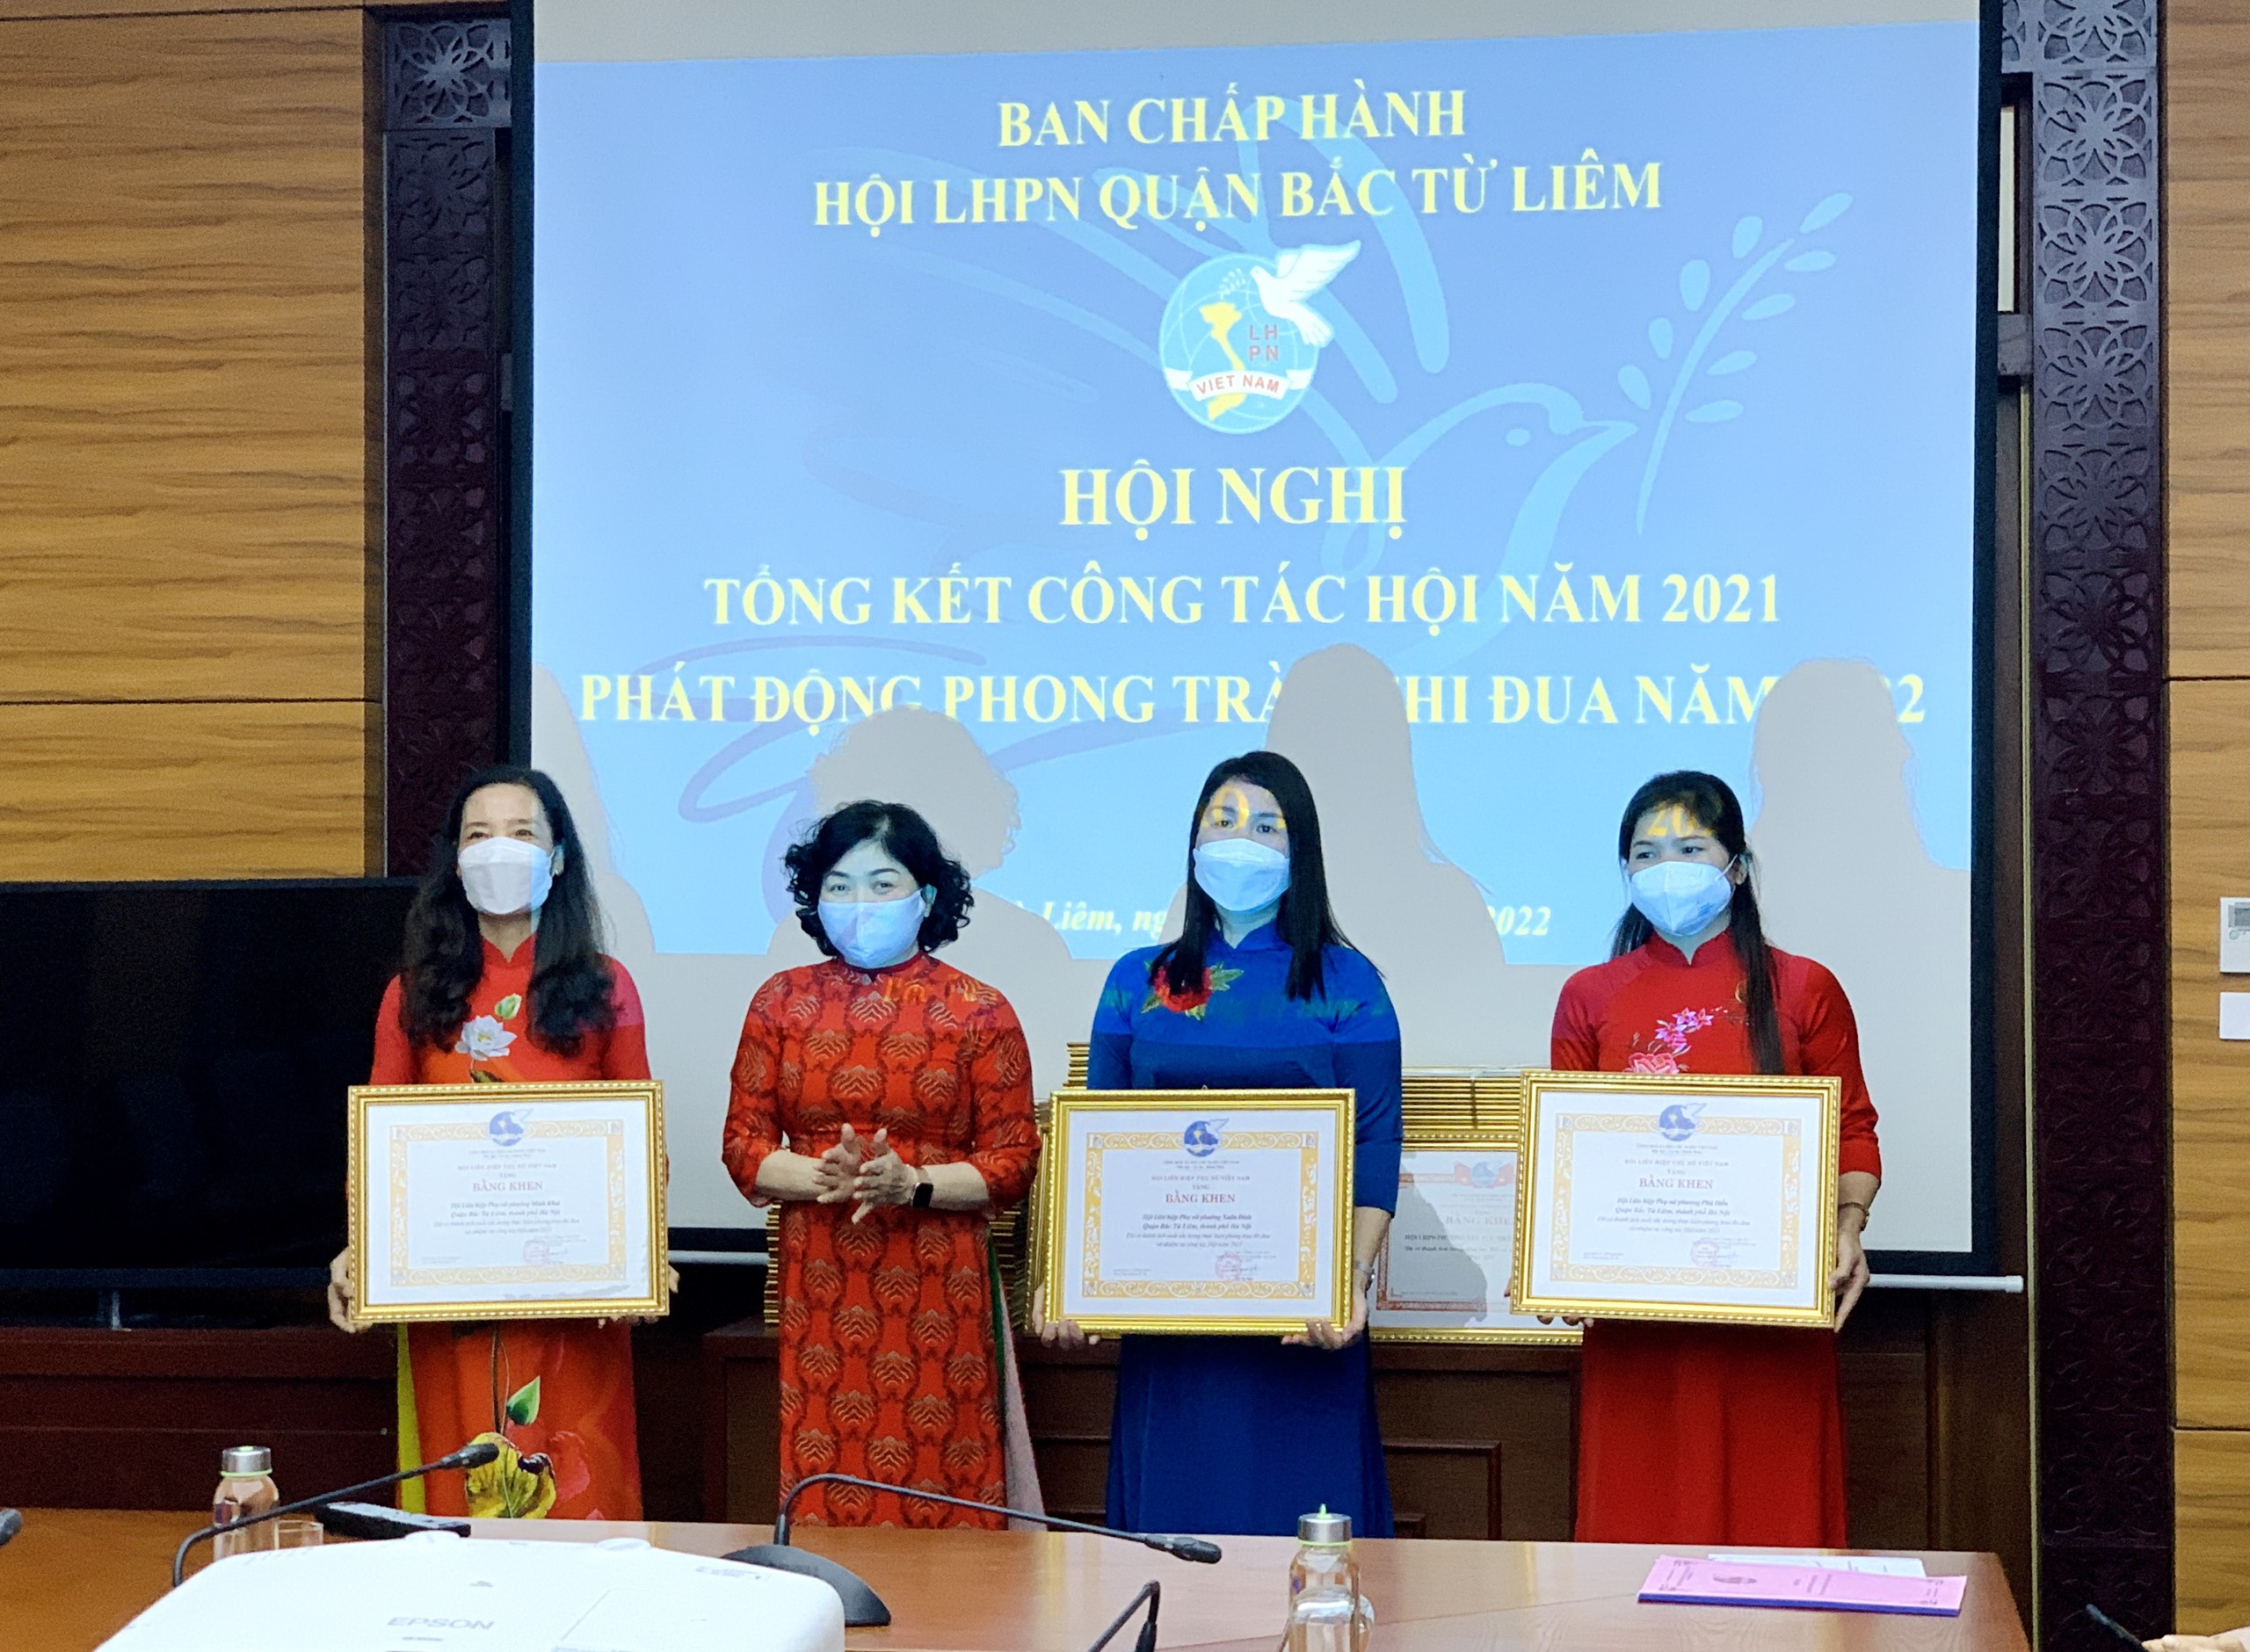 Lãnh đạo Hội LHPN TP Hà Nội và Quận Hội tặng bằng khen cho các tập thể và cá nhân đạt thành tích xuất sắc trong công tác Hội